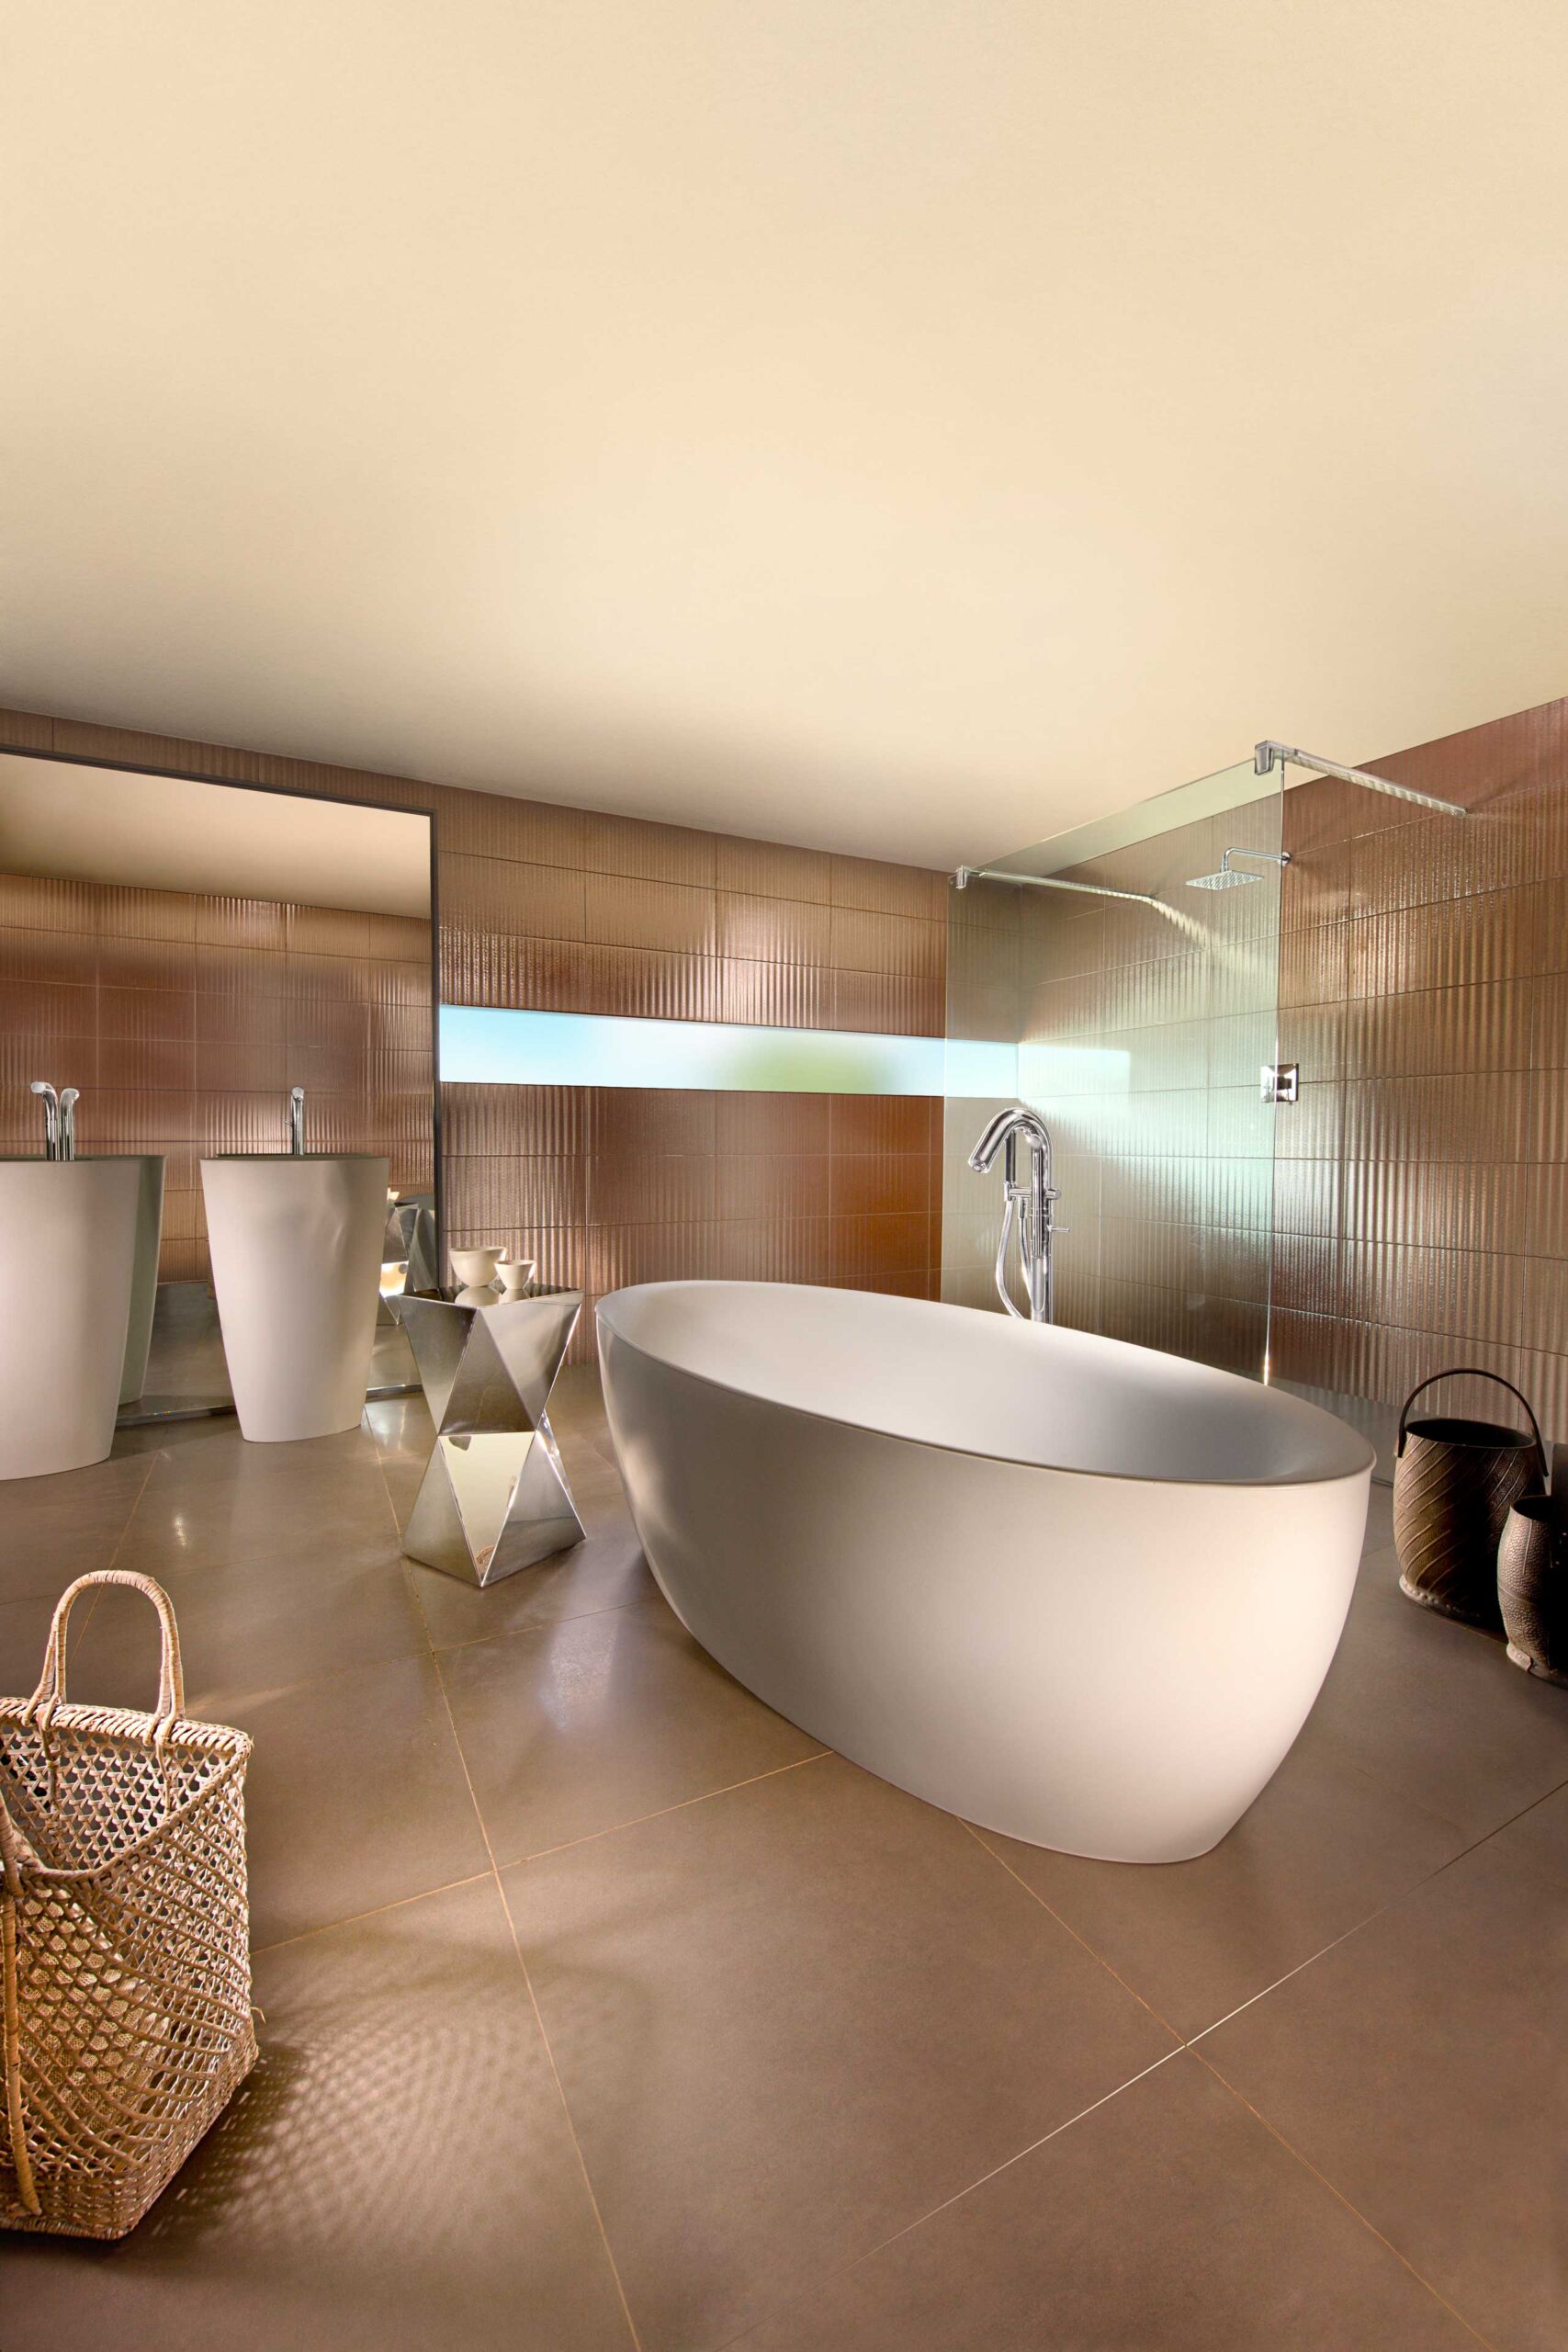 צילום עיצוב פנים בגווני חום לבן באולם תצוגה של זהבי עצמון חדר אמבטיה מרווח עם מקלחת גשם אמבטיה שני כיורים ומראה גדולה